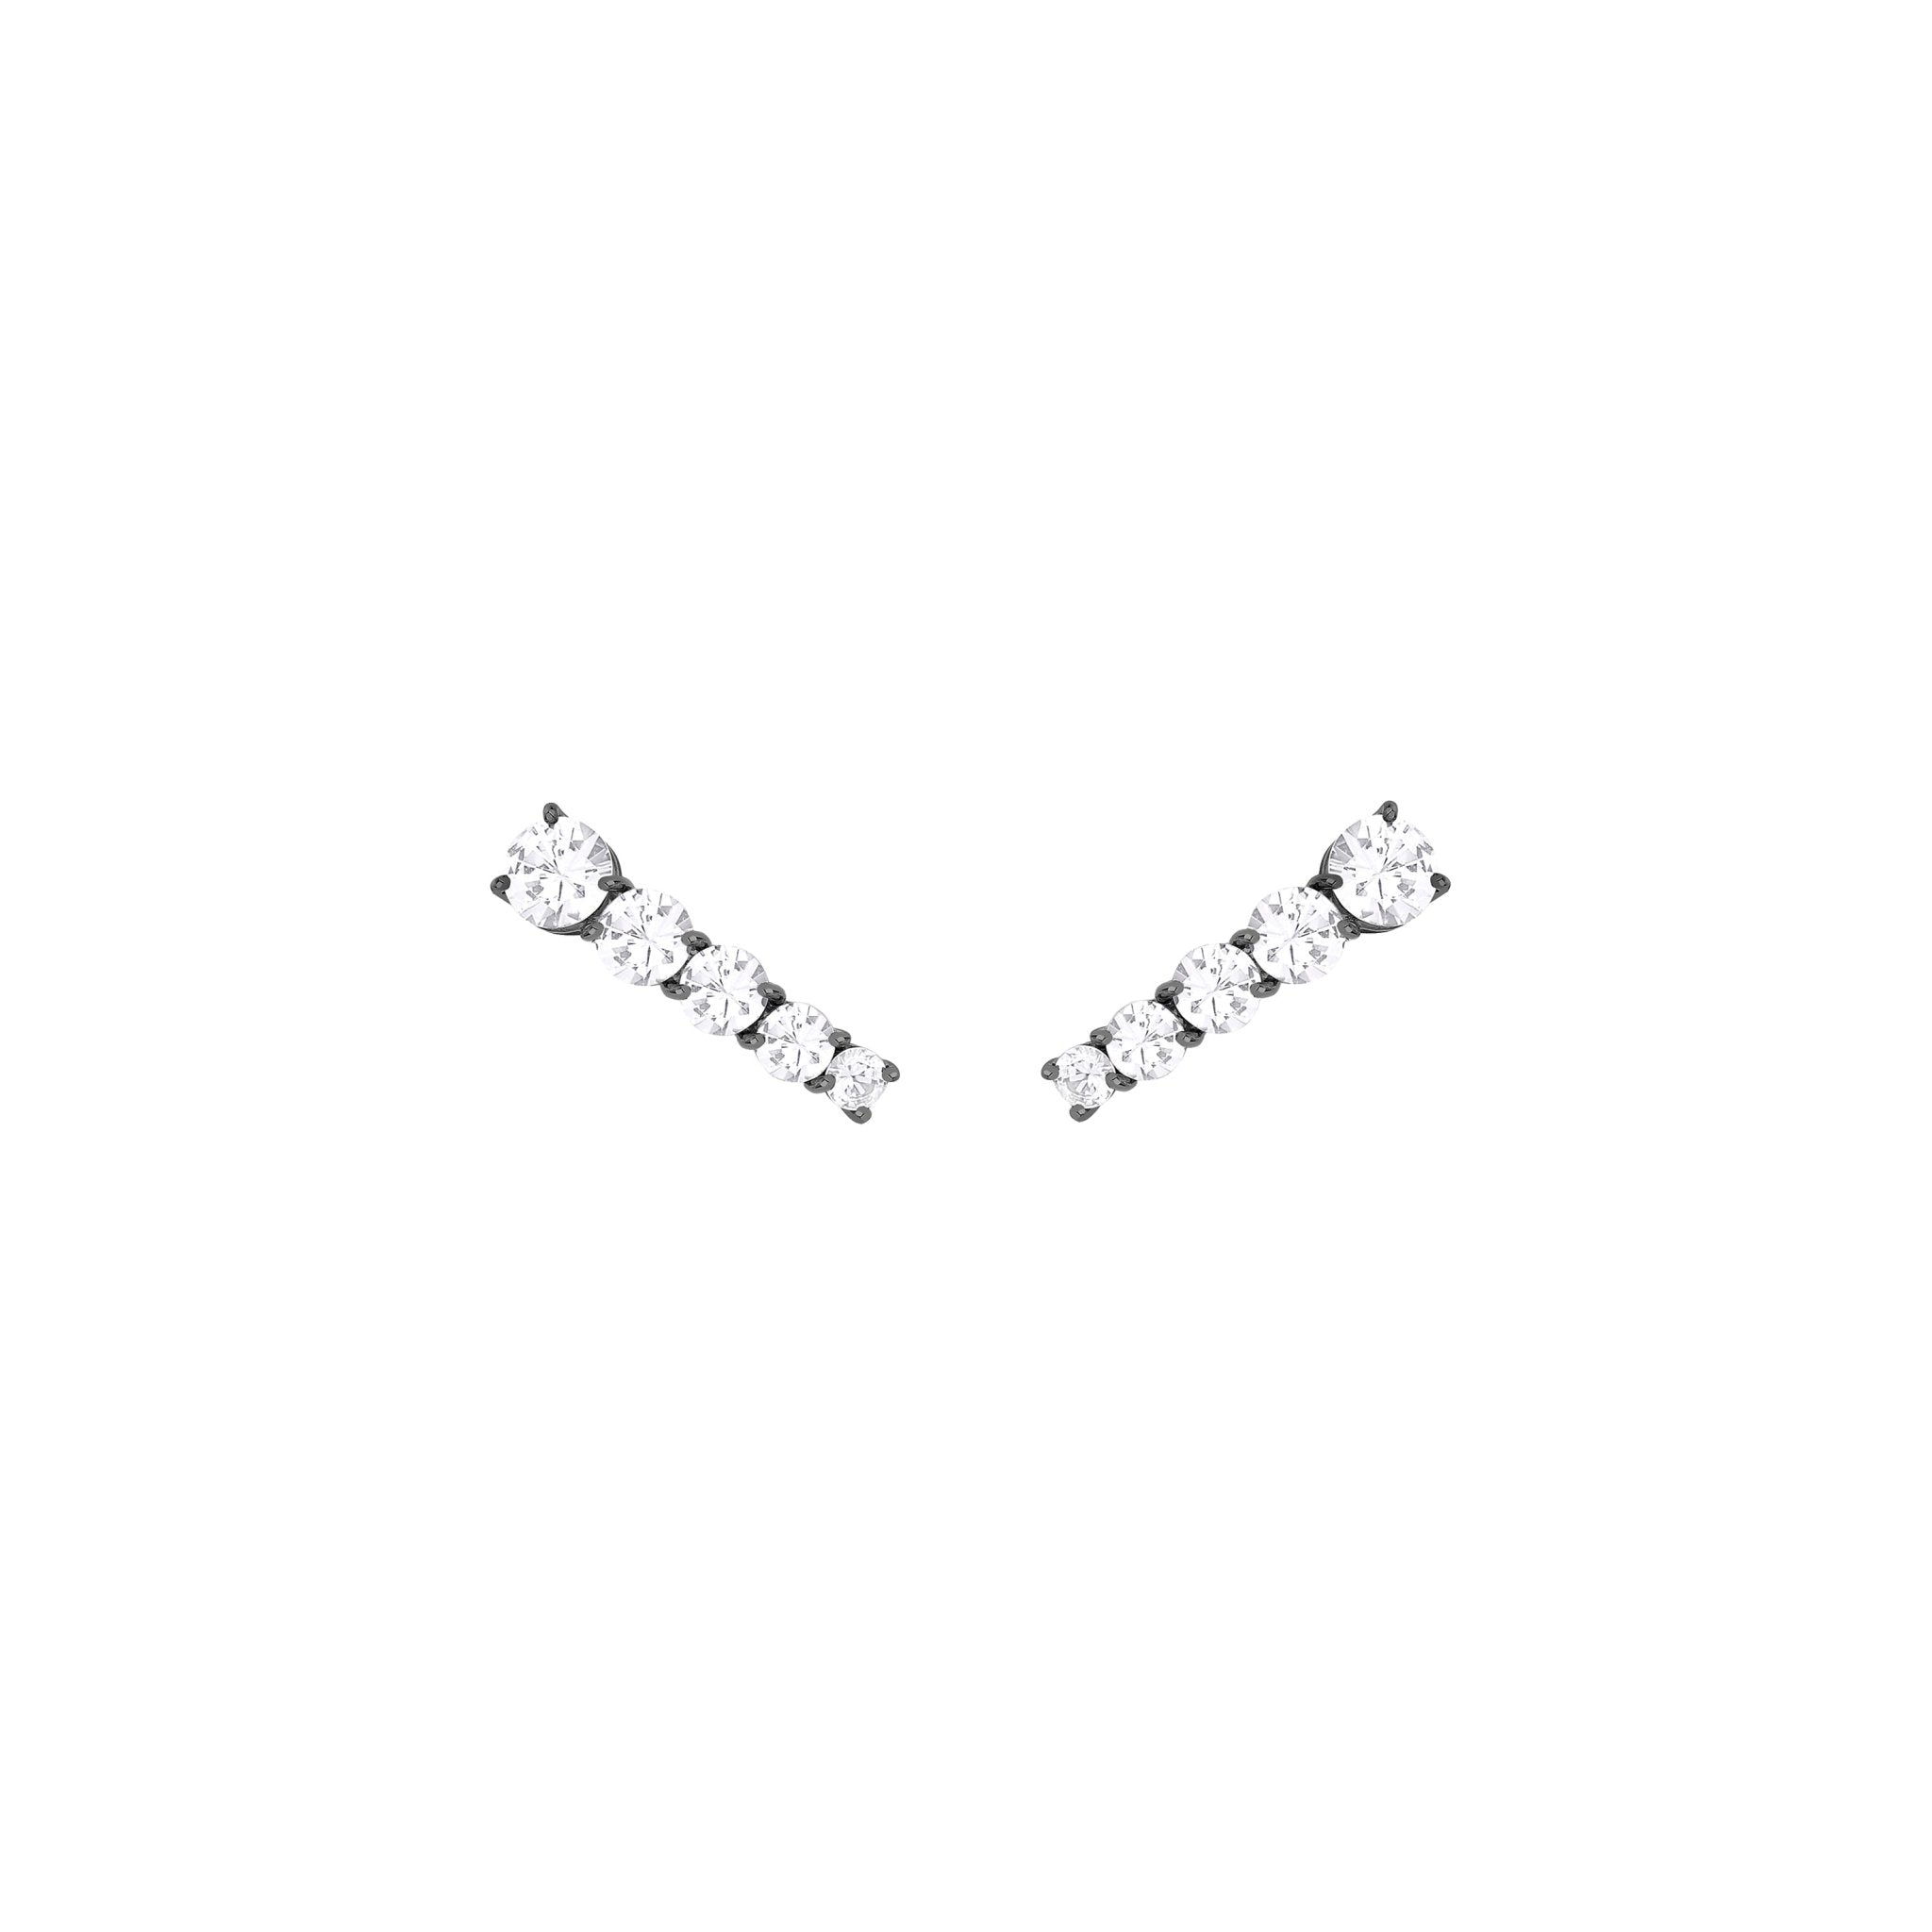 Brinco Ear Cuff Rock Star - M | Ouro Branco 18K com Ródio Negro e Safiras - Jack Vartanian - Ear Cuffs